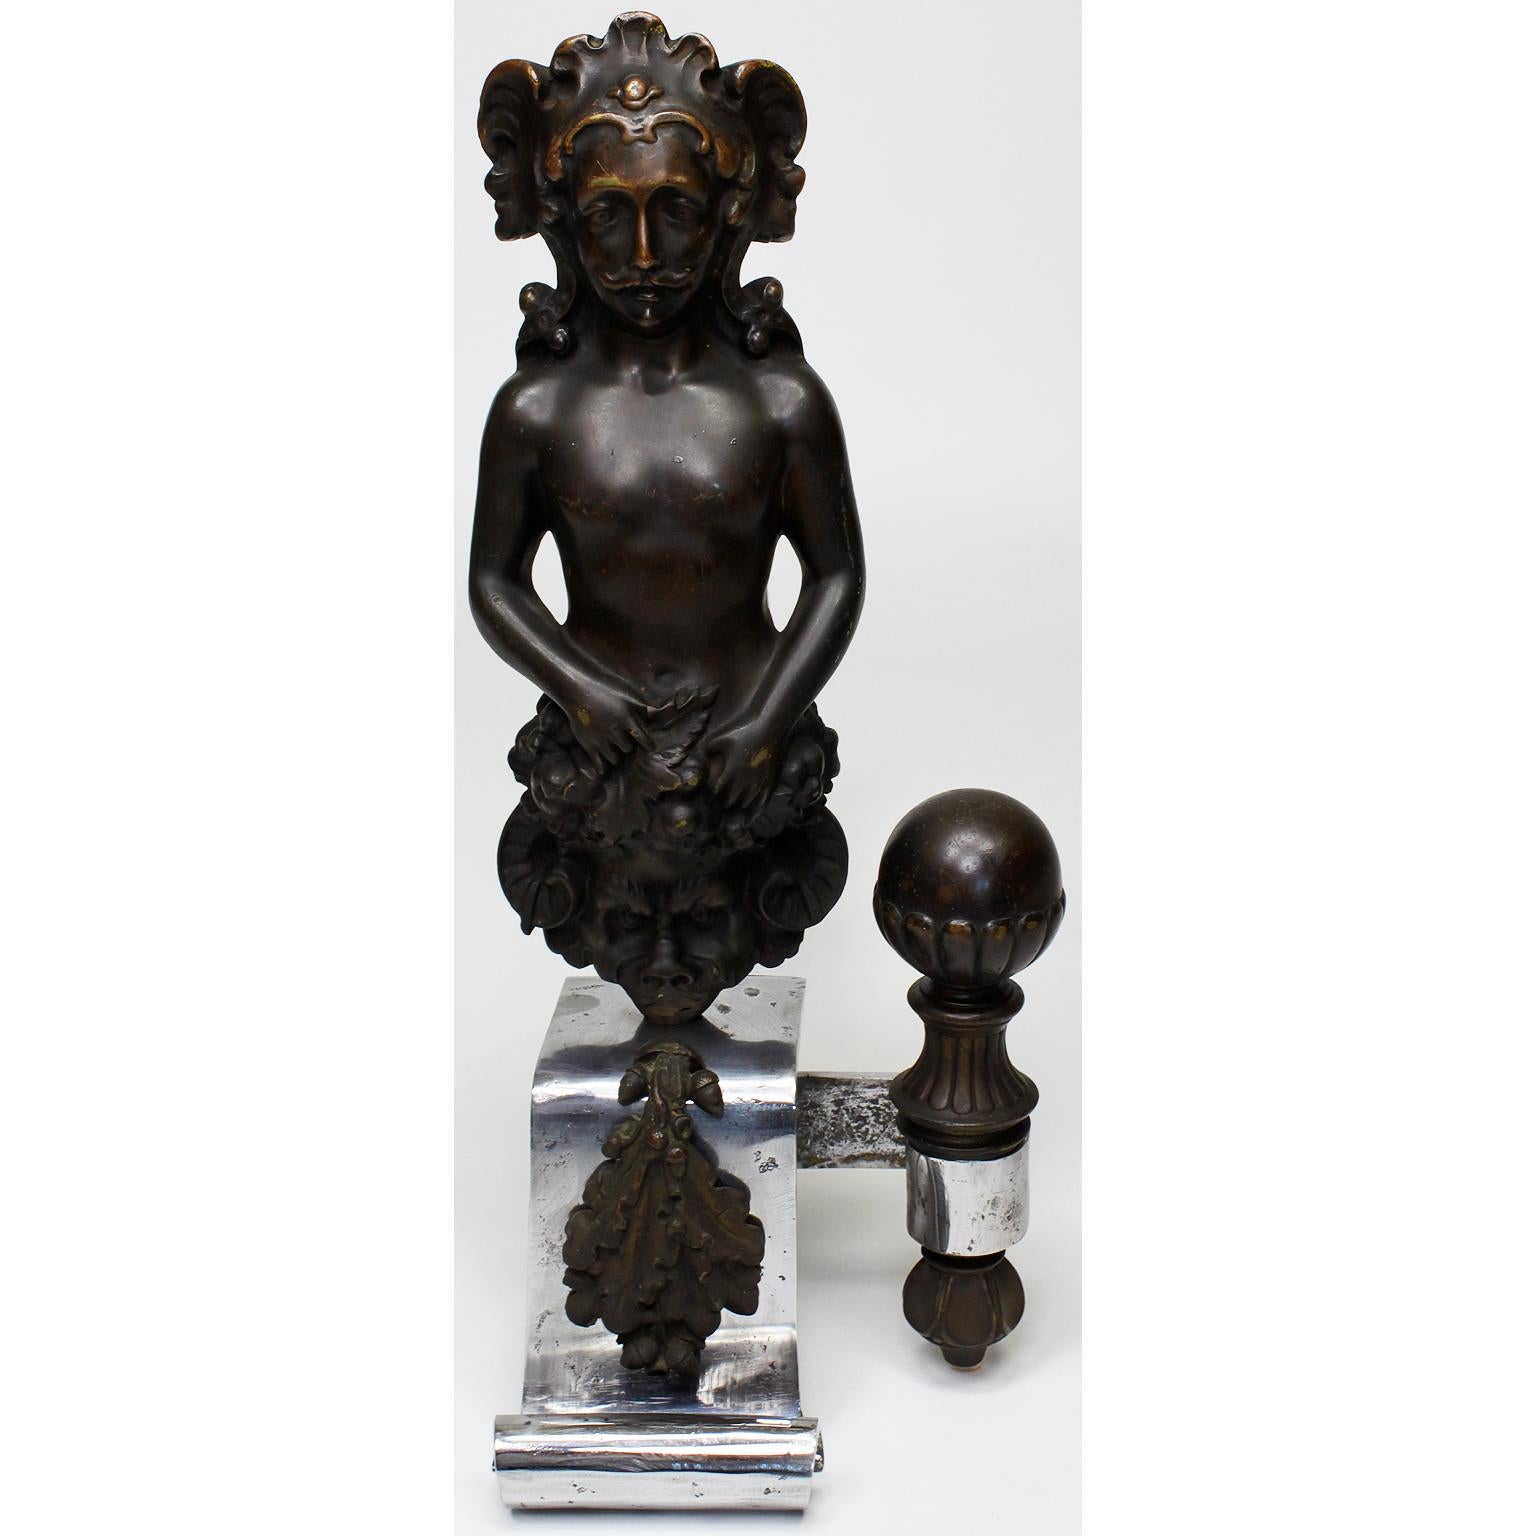 Paire de chenets (andirons) figuratifs en acier et en bronze patiné de style néo-baroque français du XIXe siècle. Chacune avec une figure masculine tenant un bouclier de satyre à côté d'une sphère décorative, toutes deux avec des supports de rondins